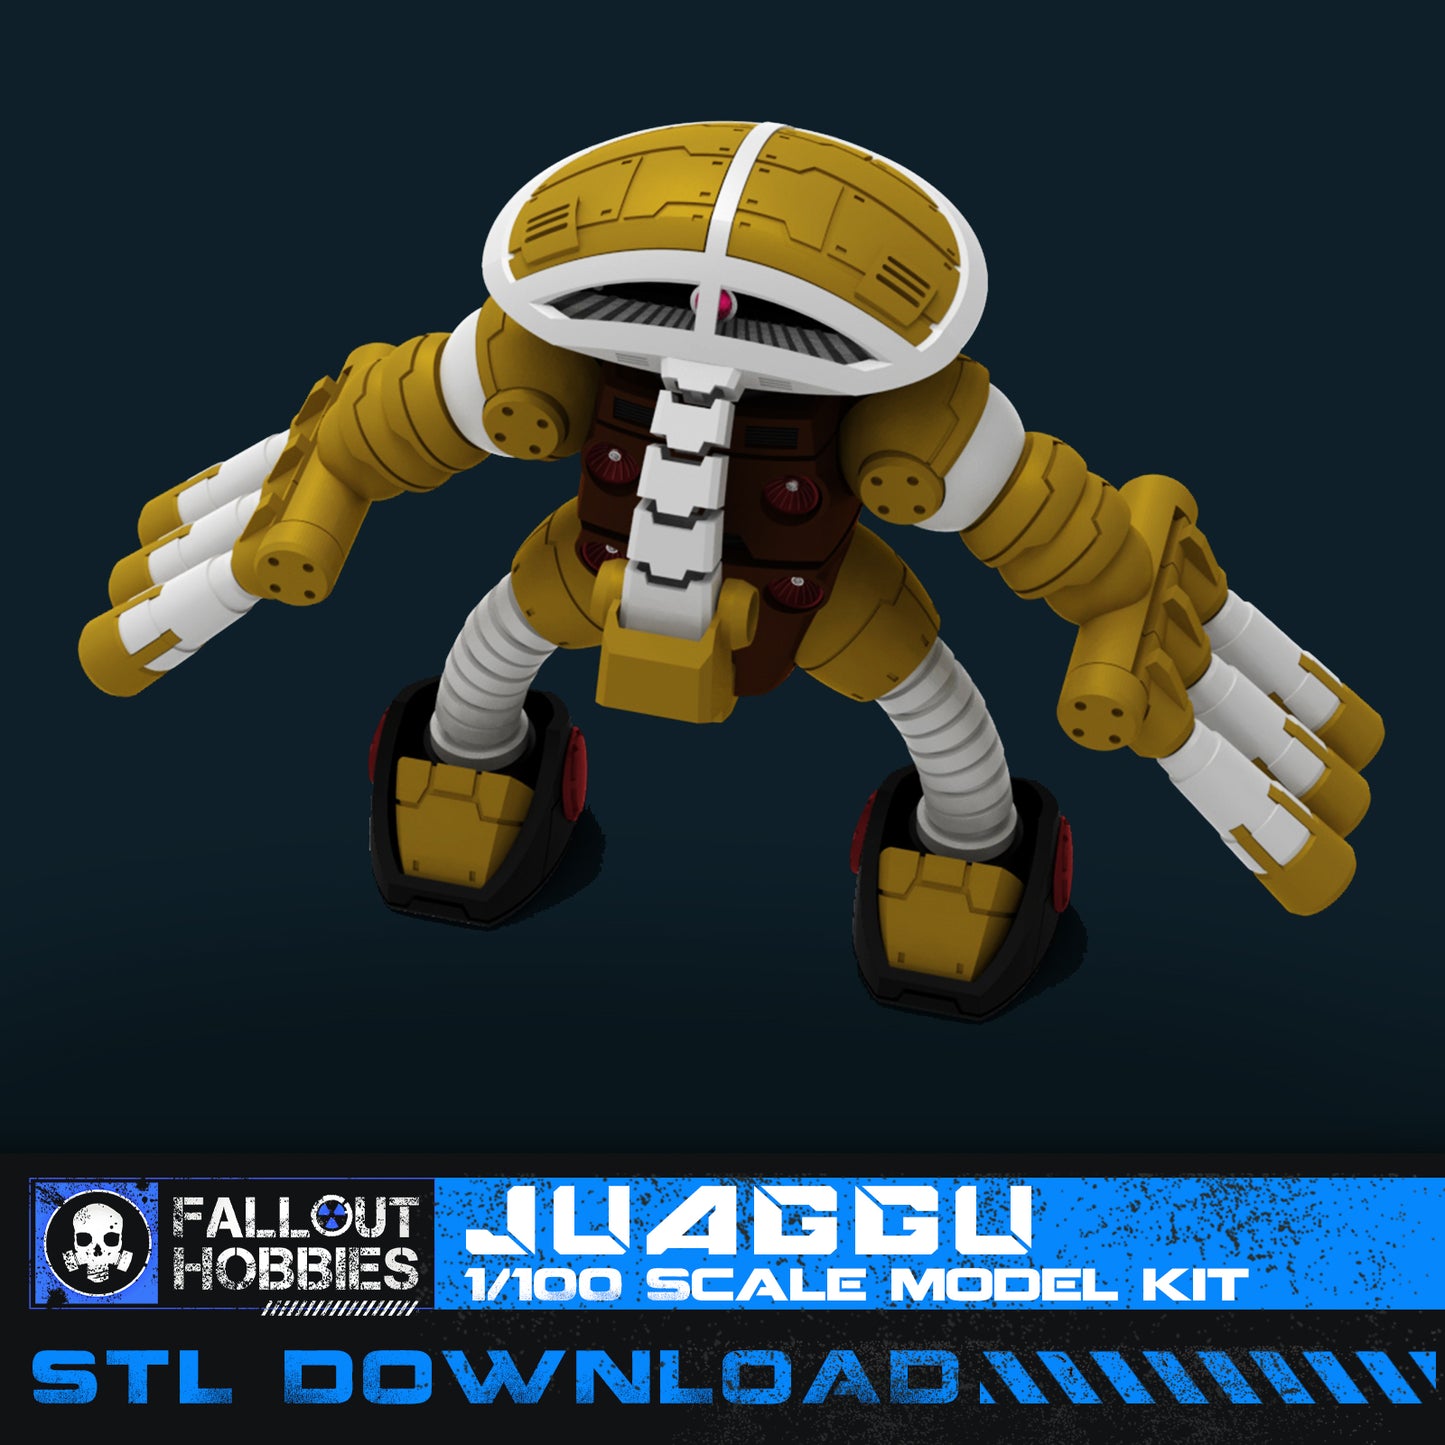 Juaggu Mecha Suit 3D STL File Download